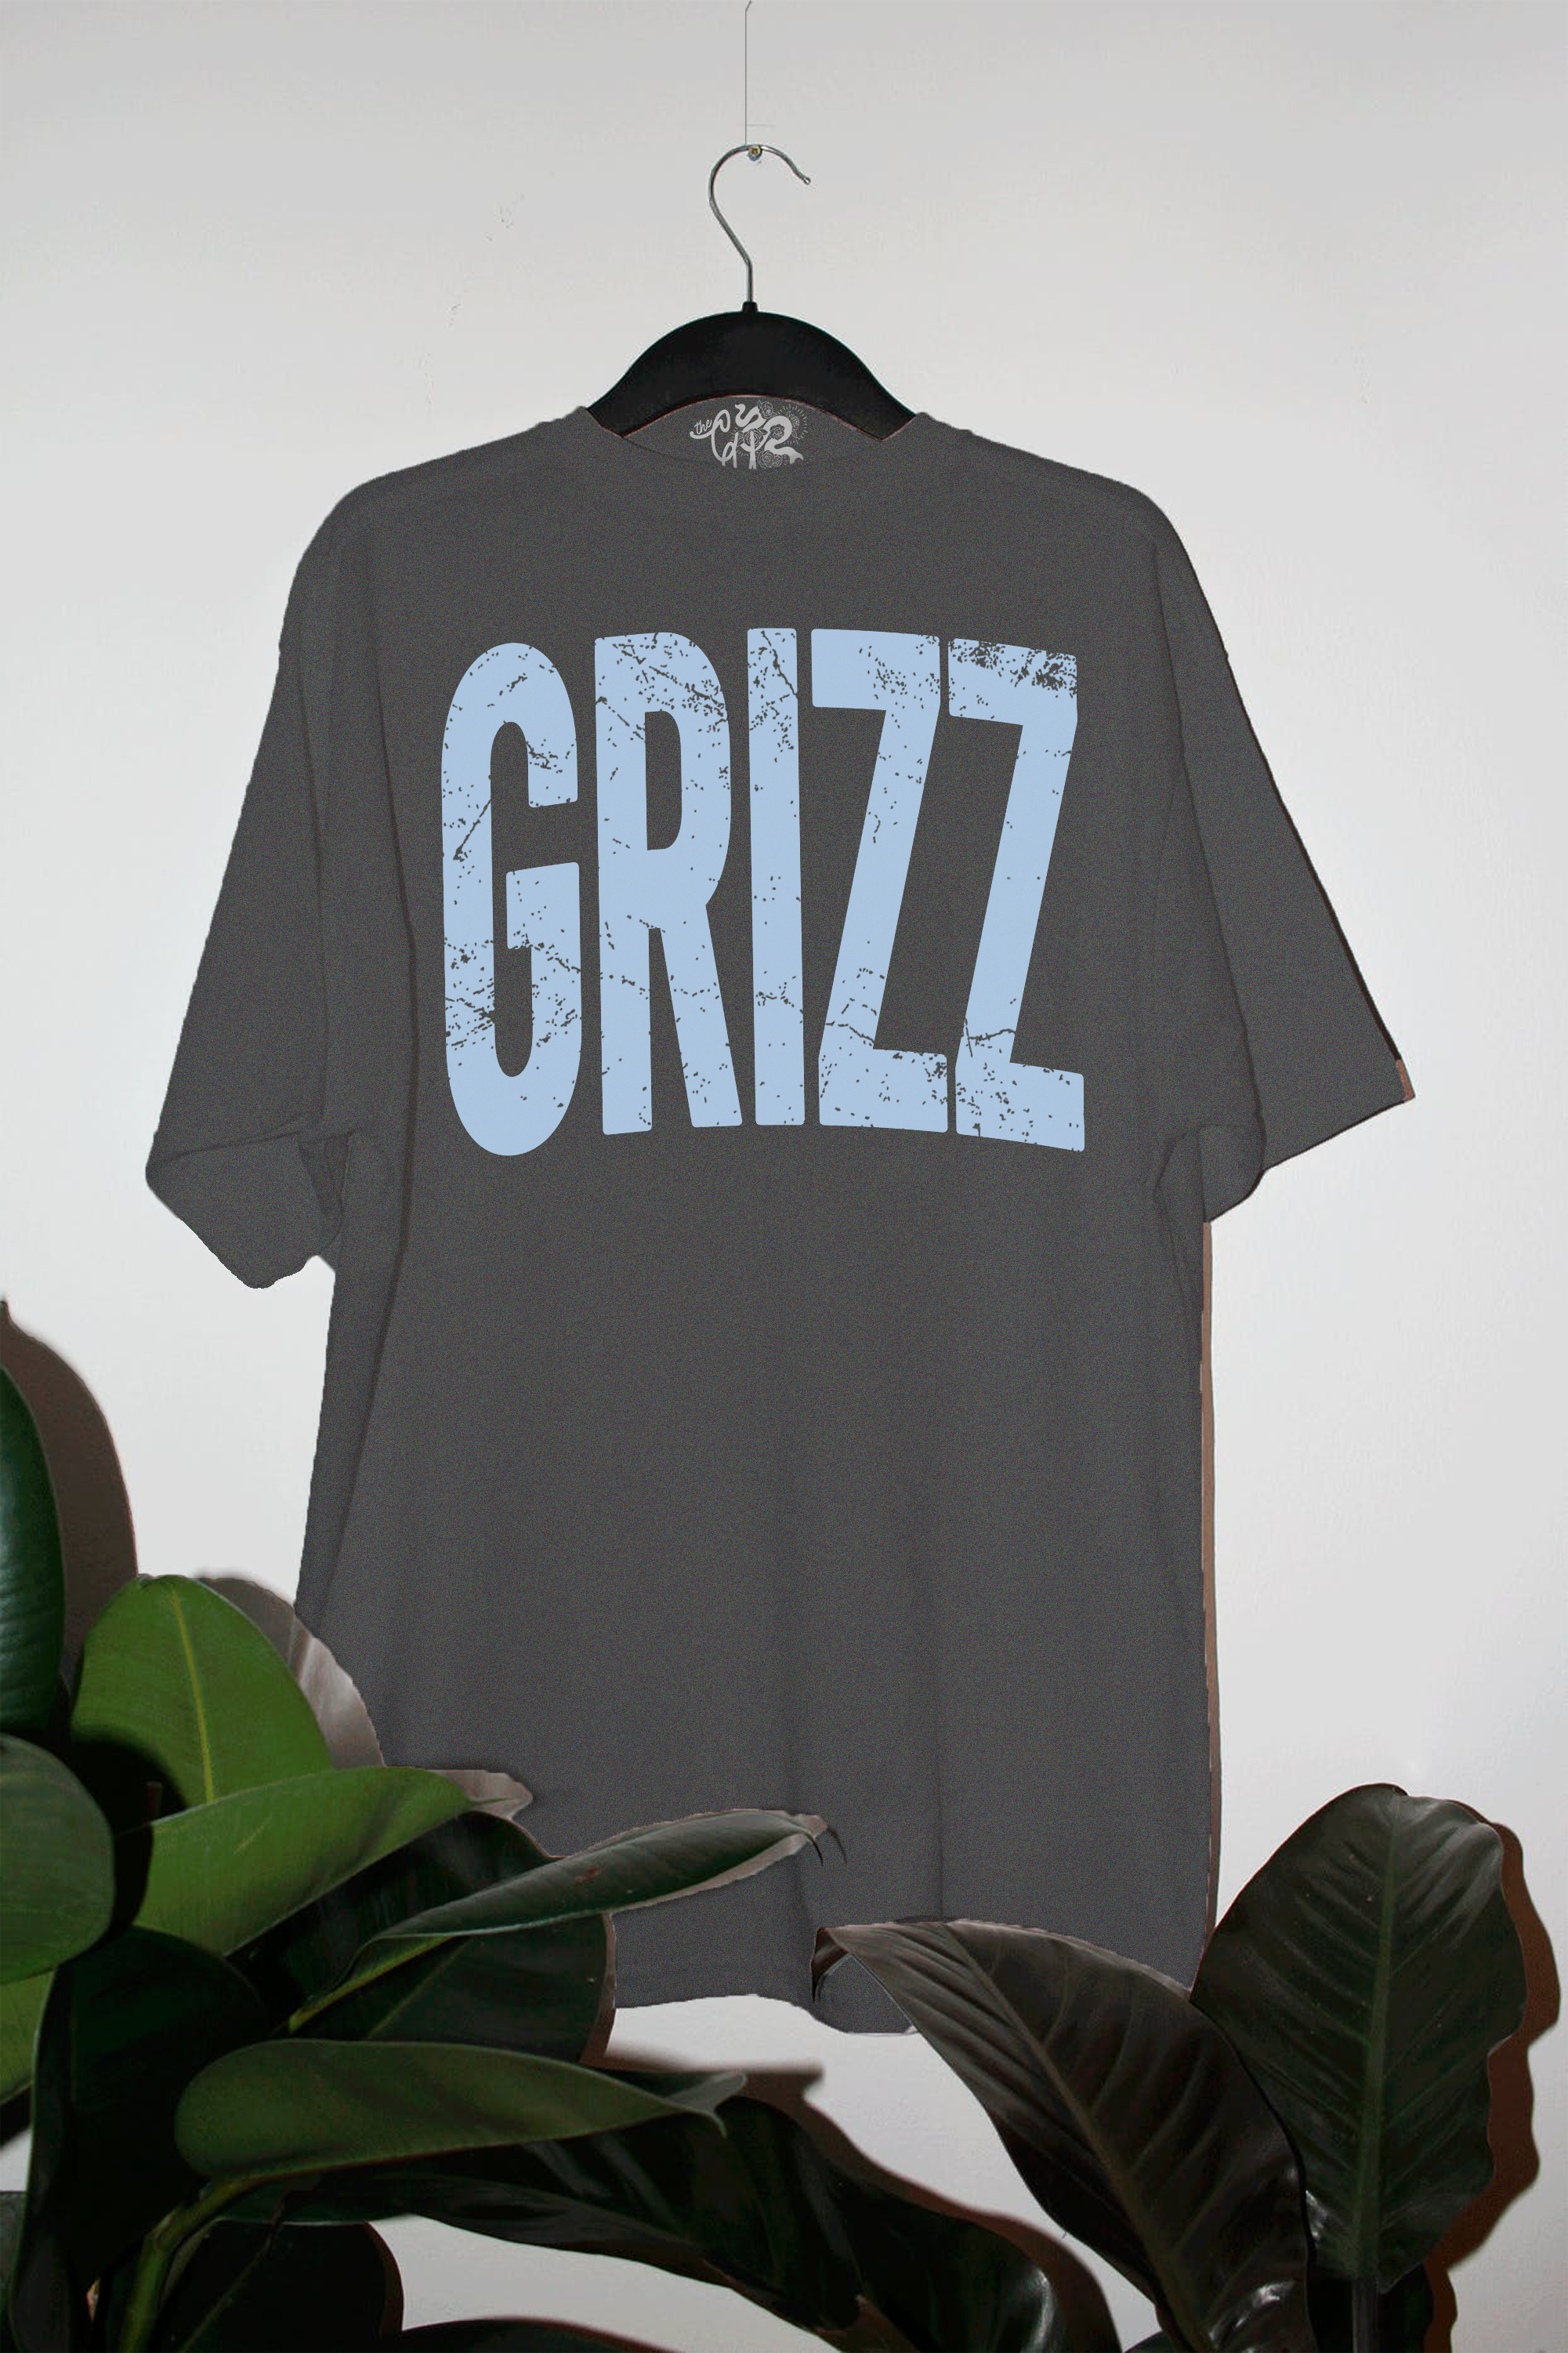 Underground Original Design: Grizzlies Basketball Oversized TShirt